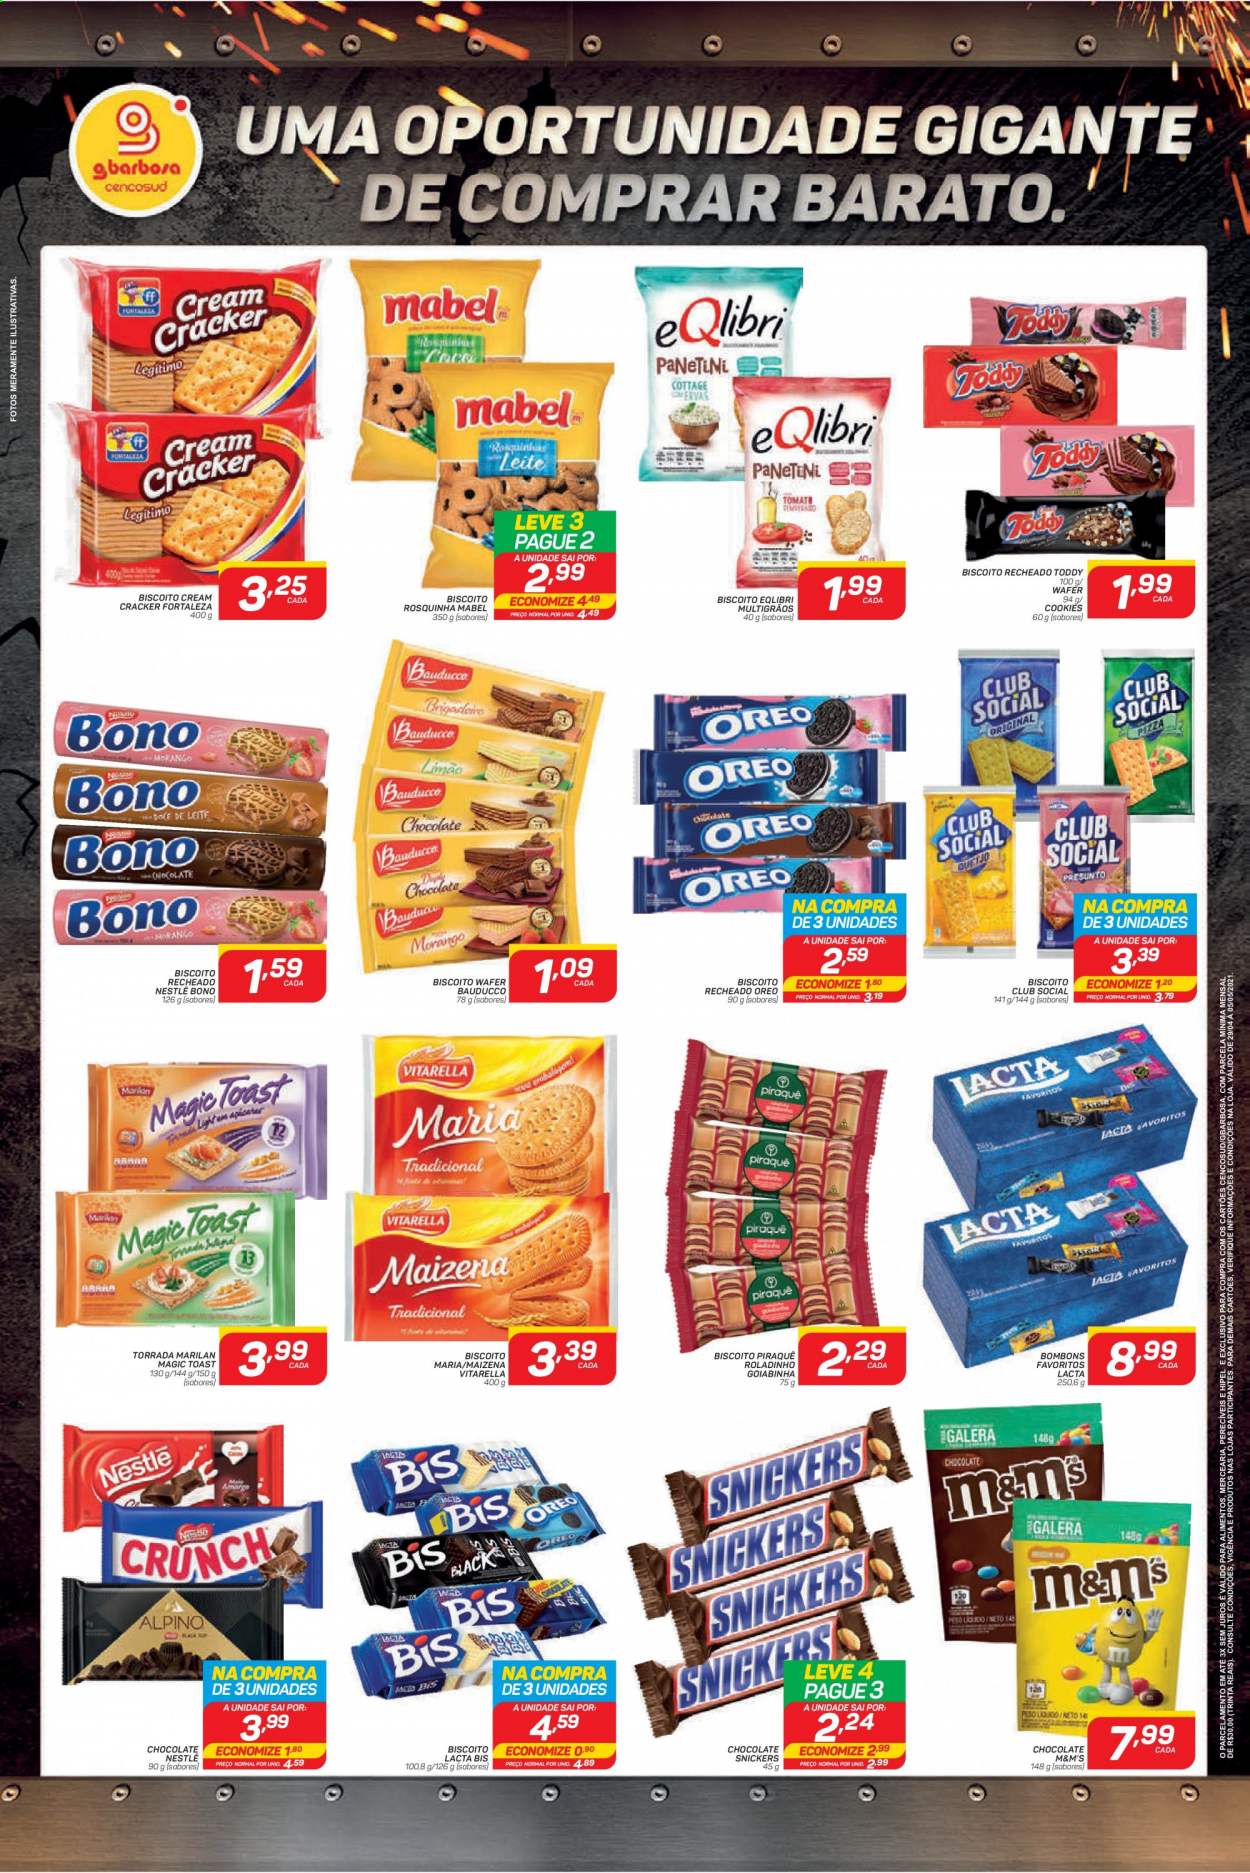 thumbnail - Folheto Gbarbosa - 29/04/2021 - 05/05/2021 - Produtos em promoção - Oreo, chocolate, biscoito, Vitarella, Snickers, Nestlé, M&M's, bombom, biscoito recheado, cracker, maizena. Página 3.